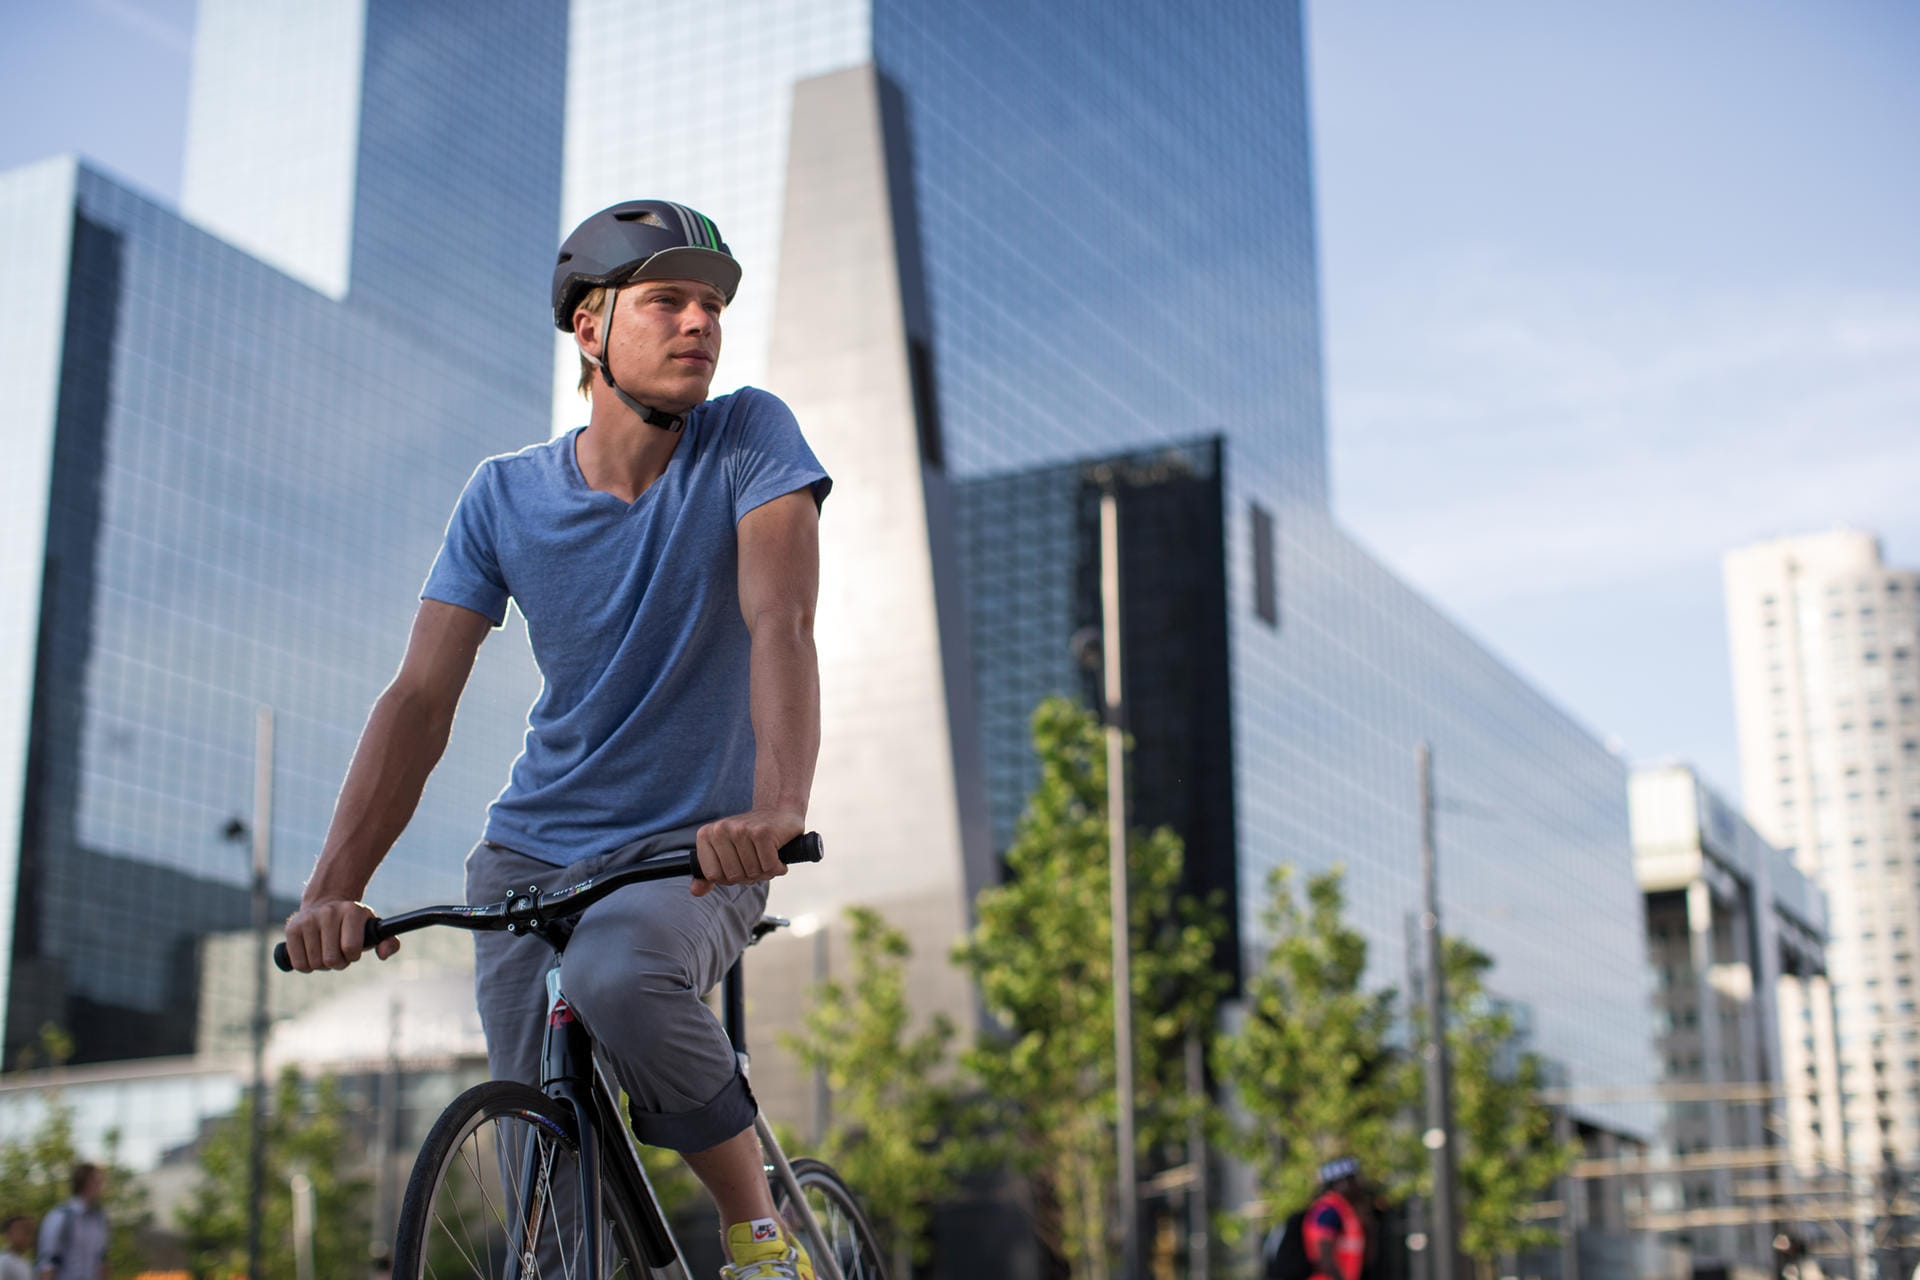 Ein Helm für schnelle Stadtradfahrer: Der "Yadd-I" von Abus kommt direkt mit integriertem Schirm, wie man ihn von der stylischen Radsportmütze kennt.